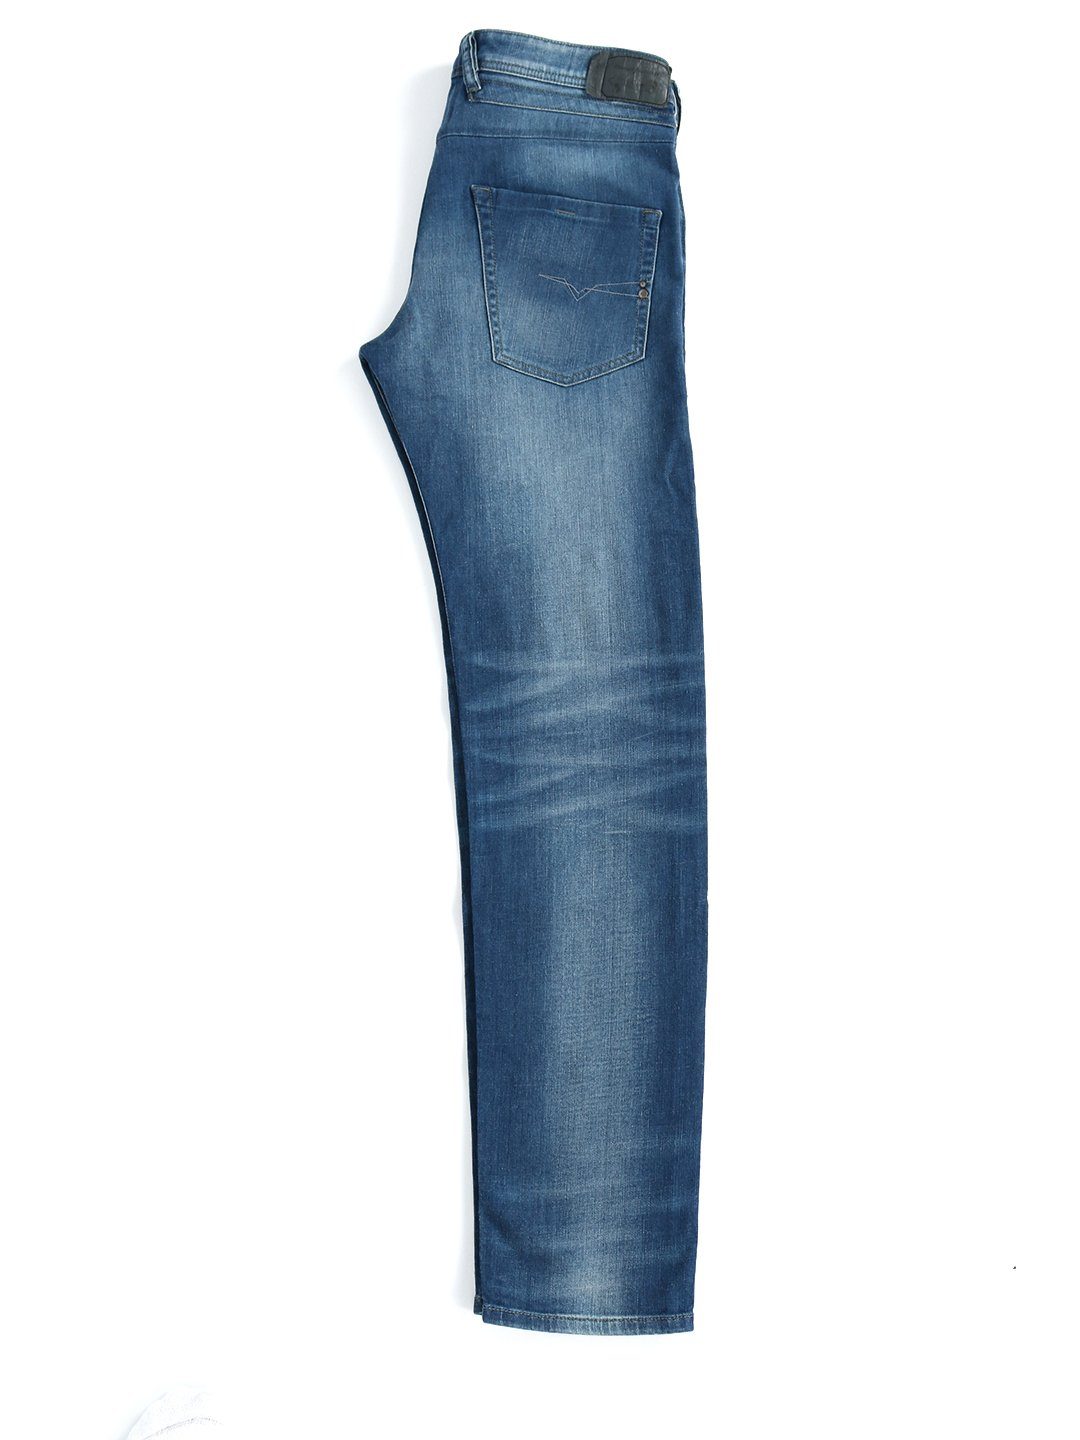 Diesel Tapered-fit-Jeans Regular Slim Länge:34 - Hose - R18T8 Belther